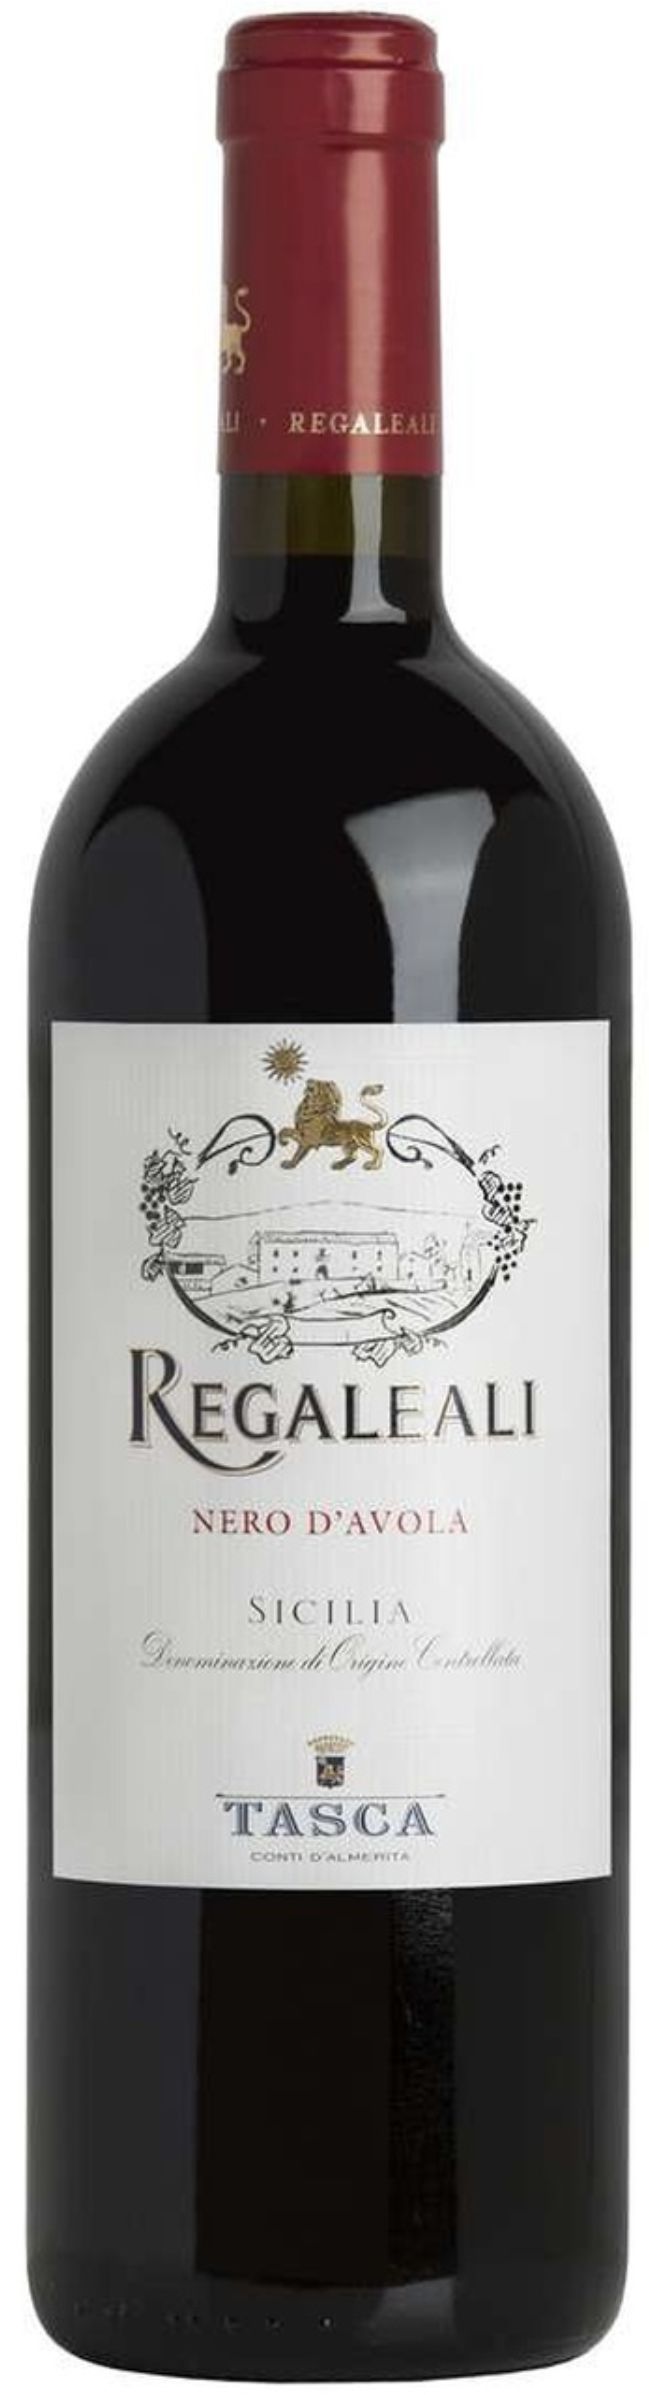 Вино Регалеали Неро Д'Авола Сицилия 2017 красное сухое алк. 13,0%, 0.75л